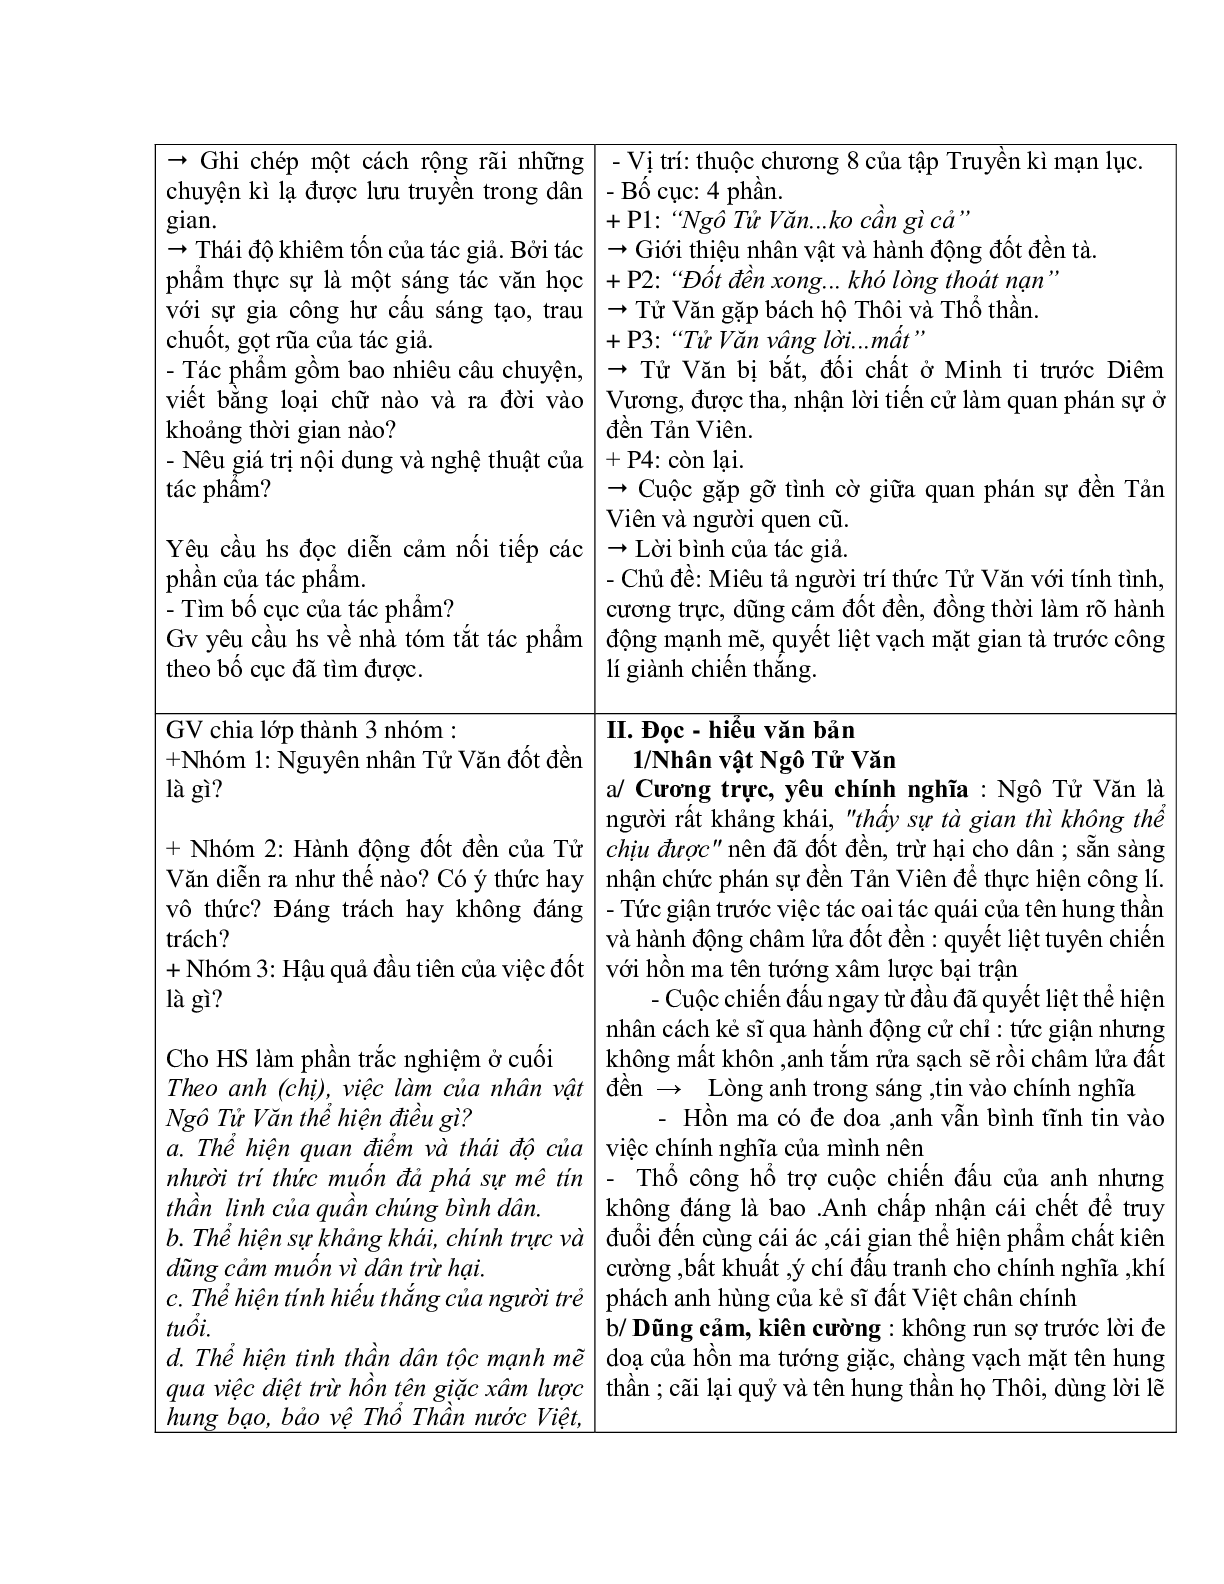 Giáo án ngữ văn lớp 10 Tiết 72: Trả bài viết số 5 chuyện chức đền Tản Viên (trang 3)